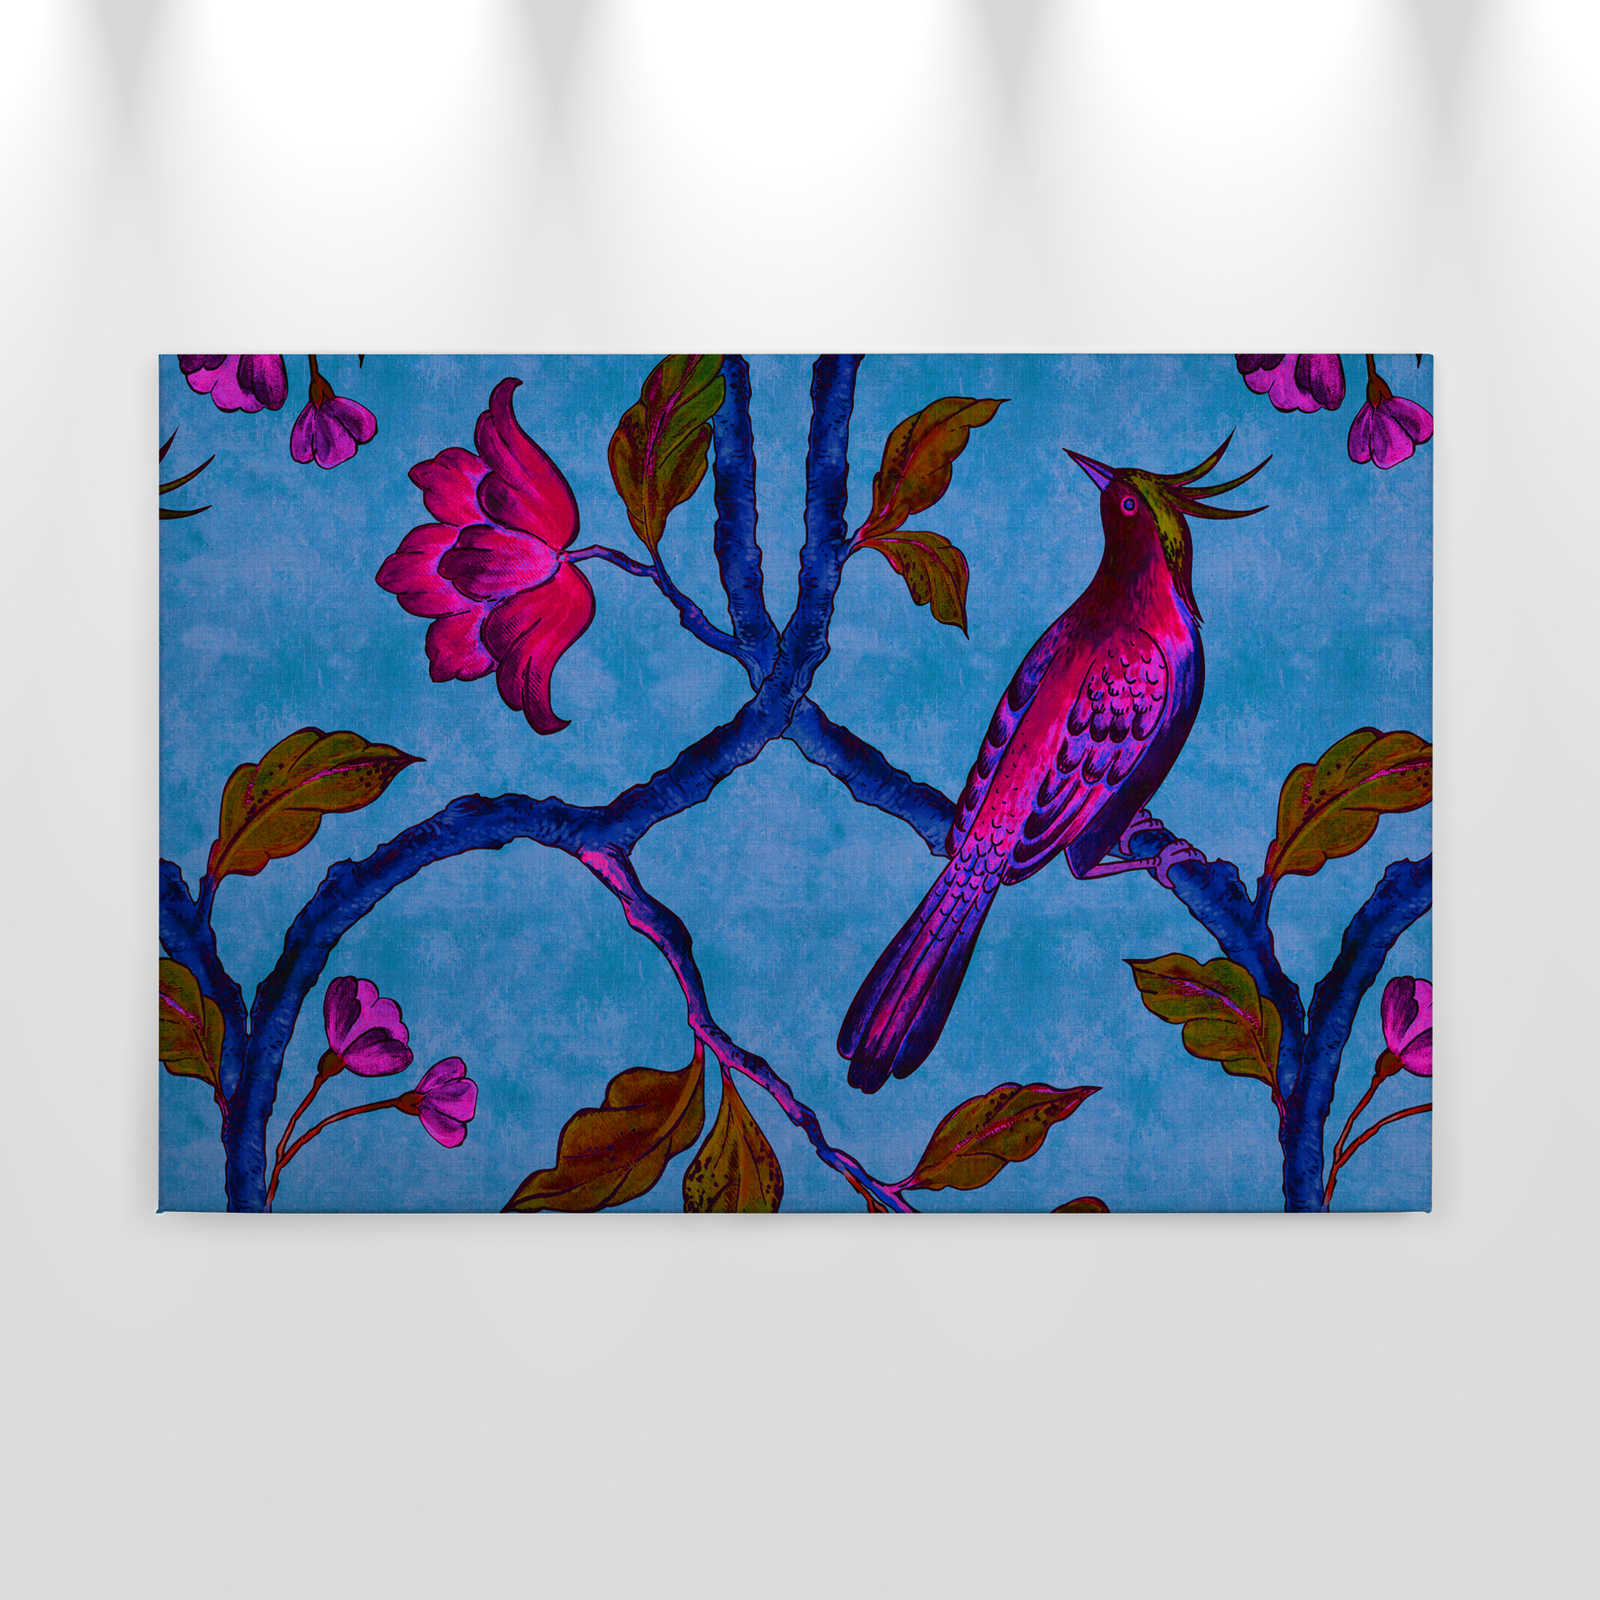             Bird Of Paradis 1 - Quadro su tela di lino naturale con uccello del paradiso - 0,90 m x 0,60 m
        